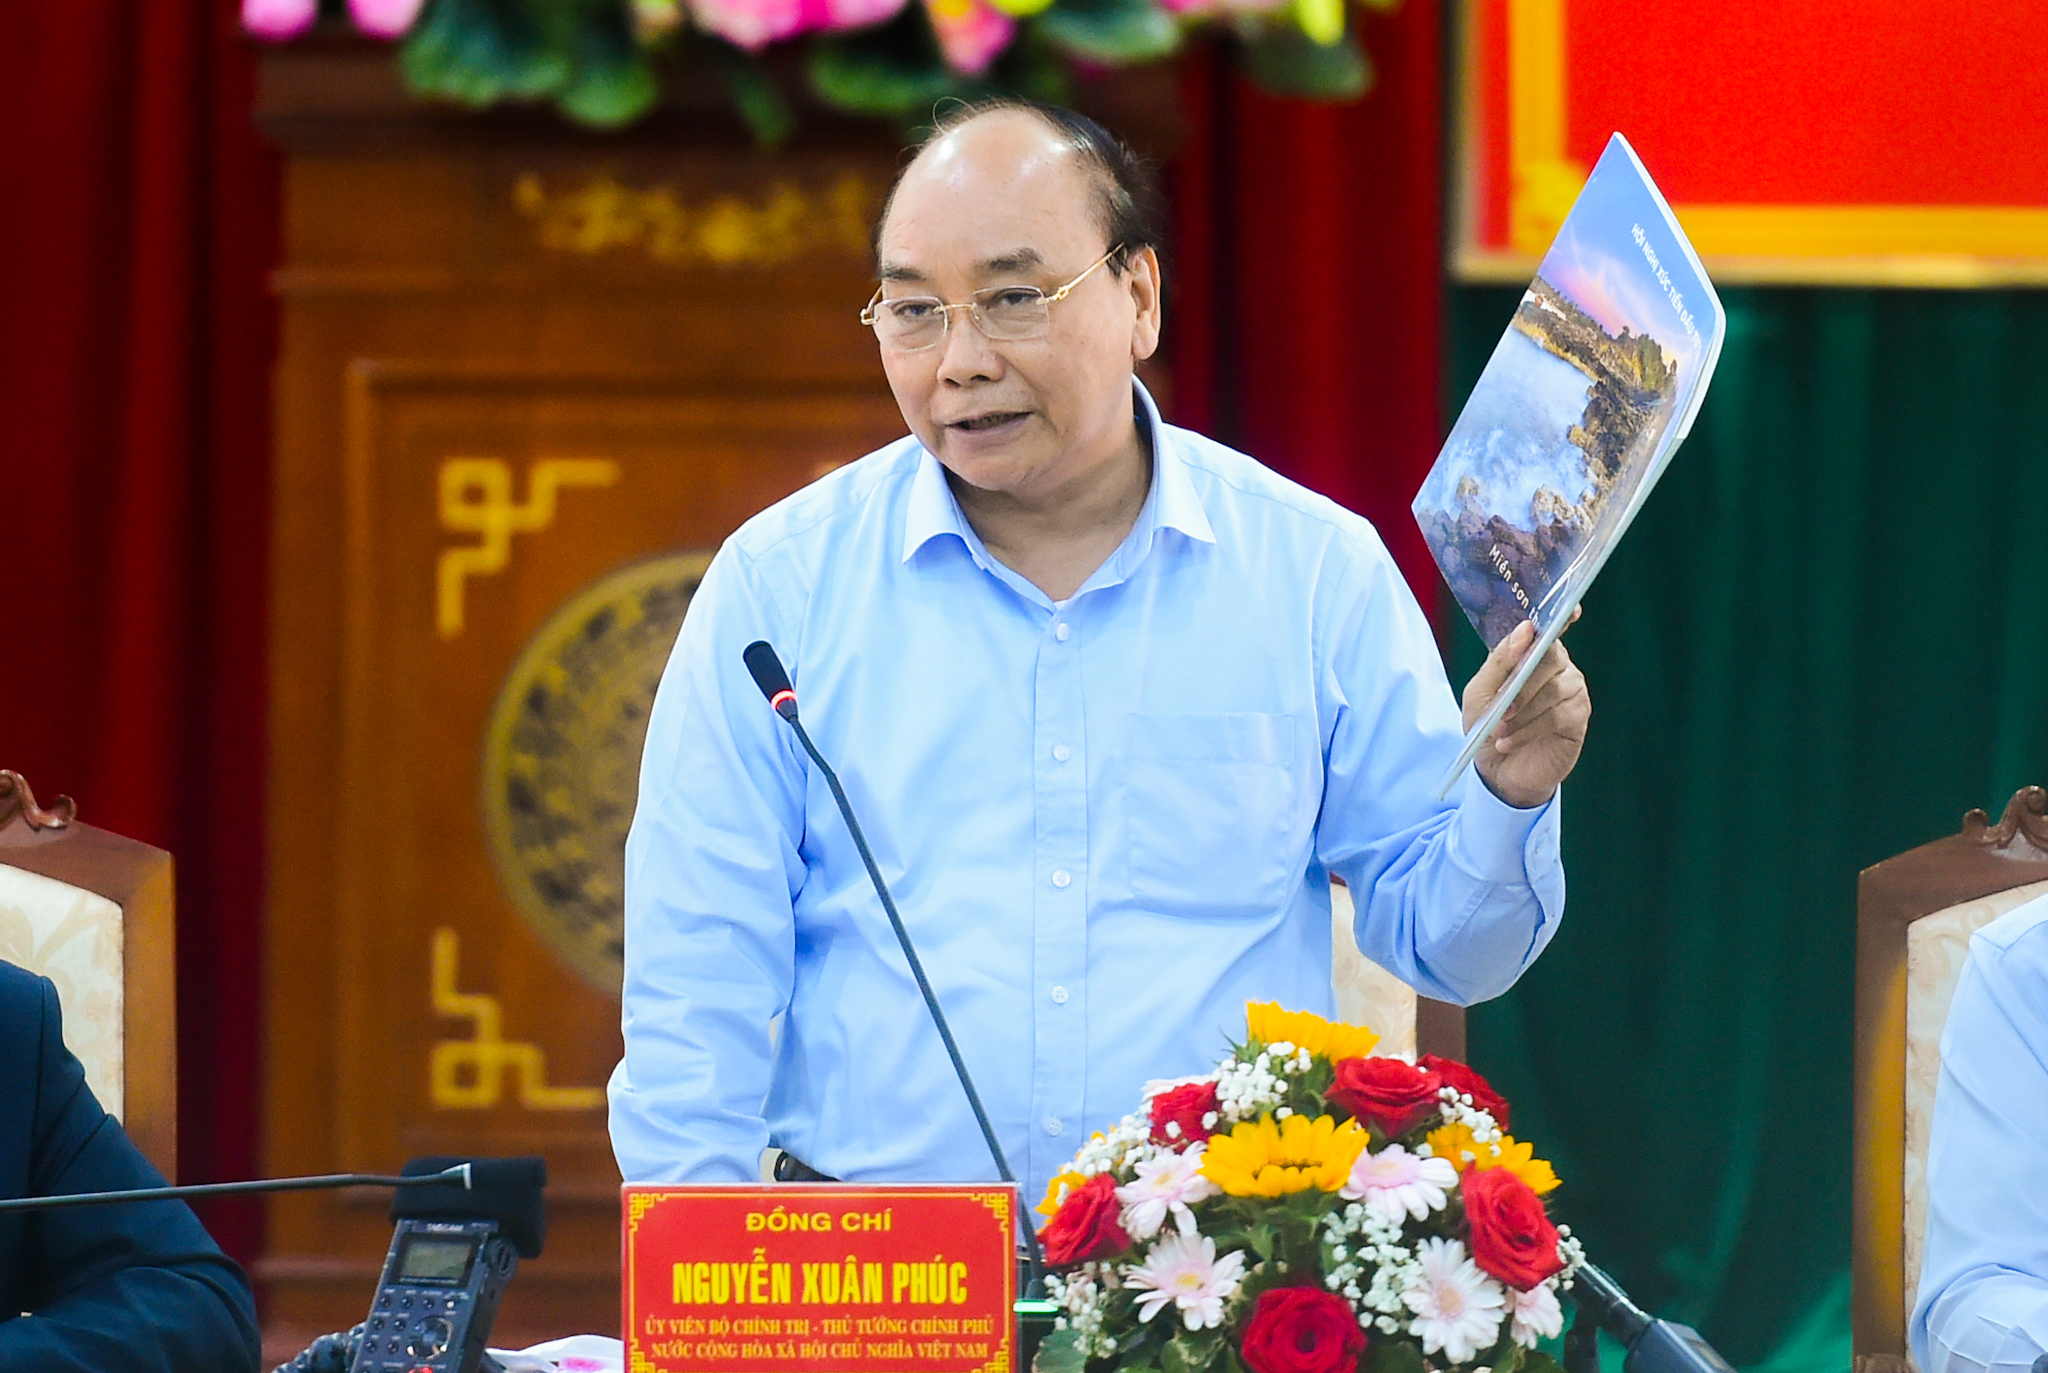 Thủ tướng Nguyễn Xuân Phúc: ‘Không nên chỉ chú trọng đại bàng mà cần có hình dung rõ ràng về chiếc tổ’